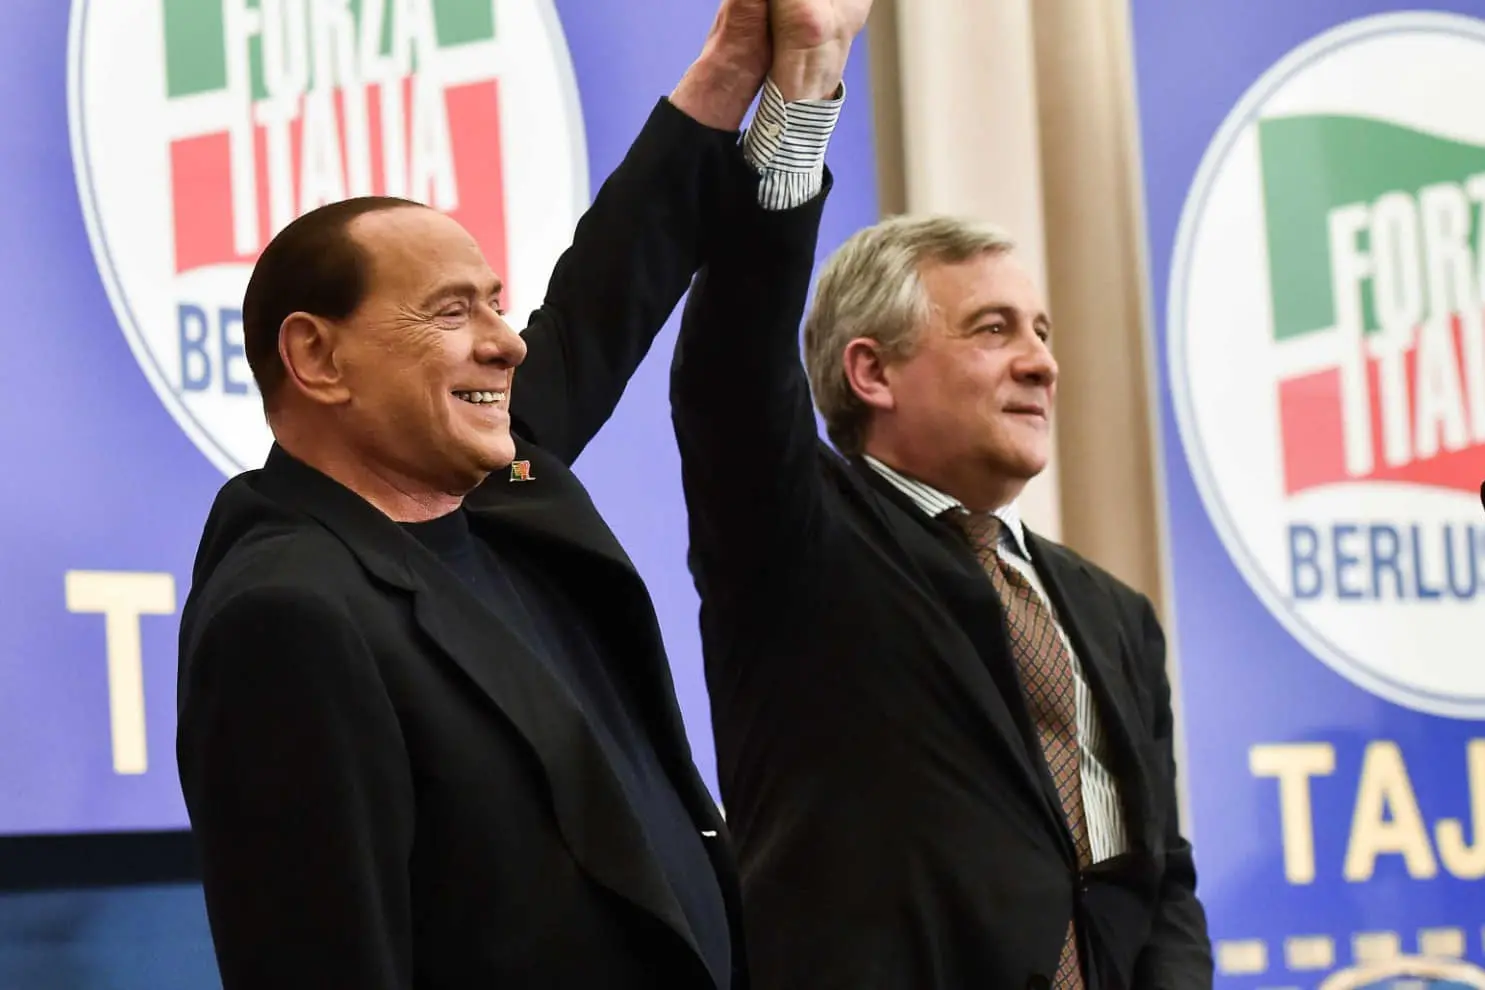 Silvio Berlusconi, fondatore e presidente di Forza Italia, con il suo successore Antonio Tajani in una foto del 2021. In occasione delle Europee, il nuovo coordinatore degli azzurri ha scelto questa immagine per la pubblicità elettorale